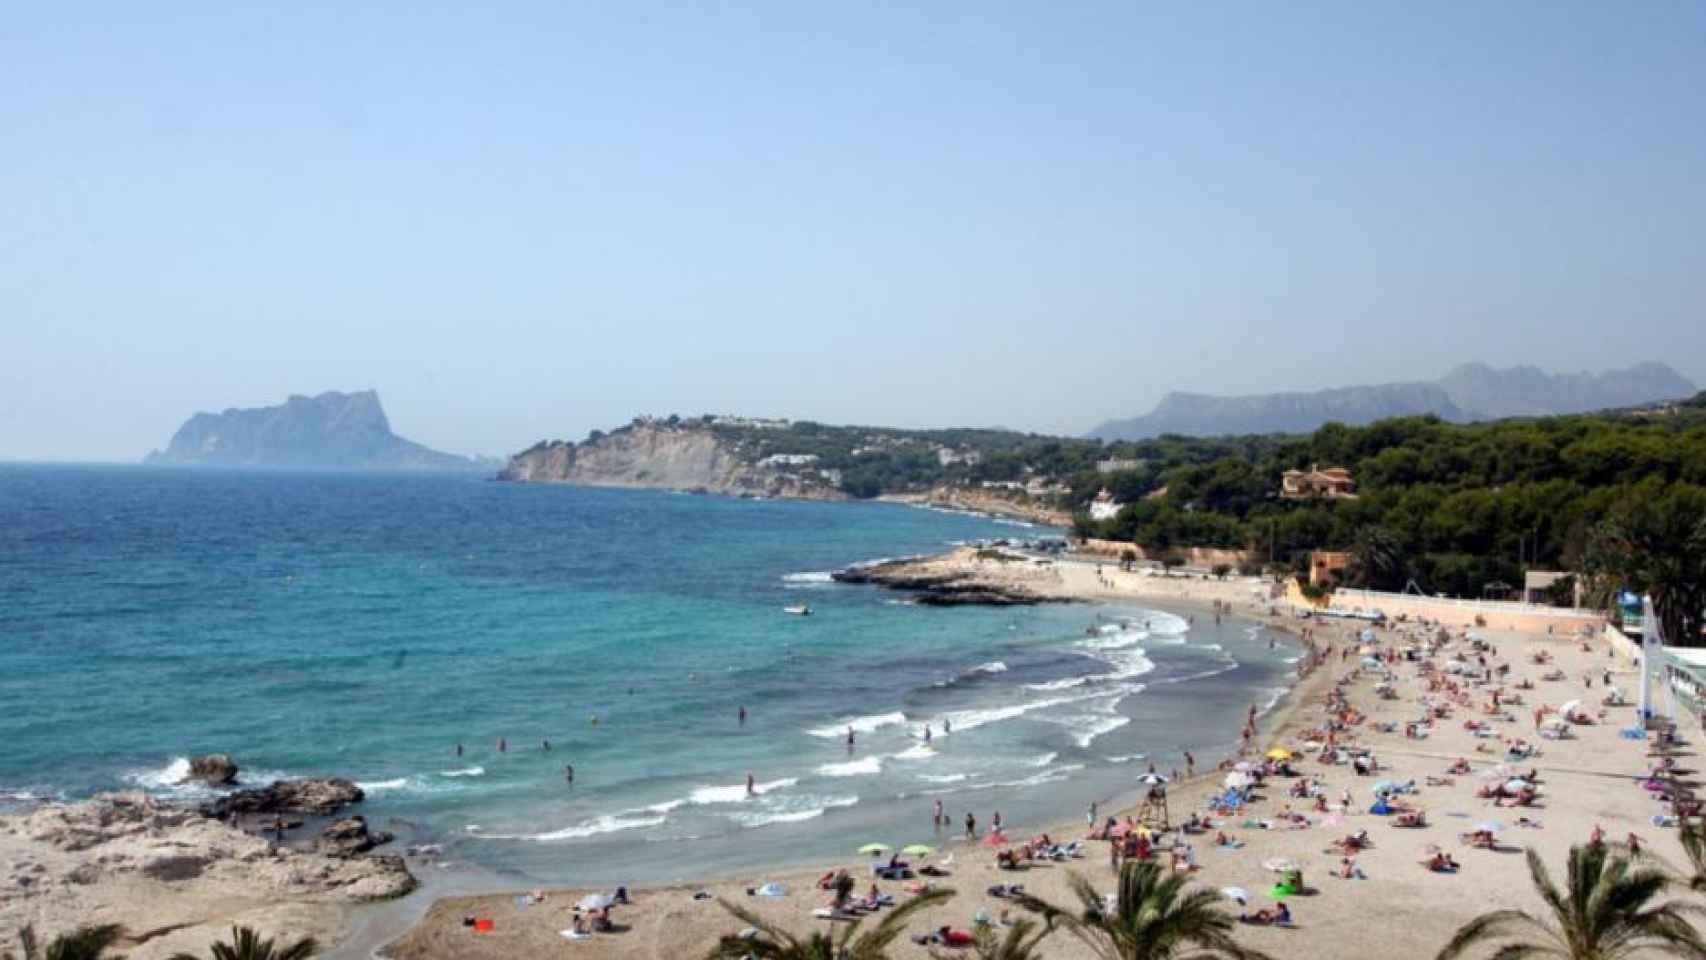 El septuagenario británico ha fallecido ahogado en la playa L'Ampolla de Moraira.